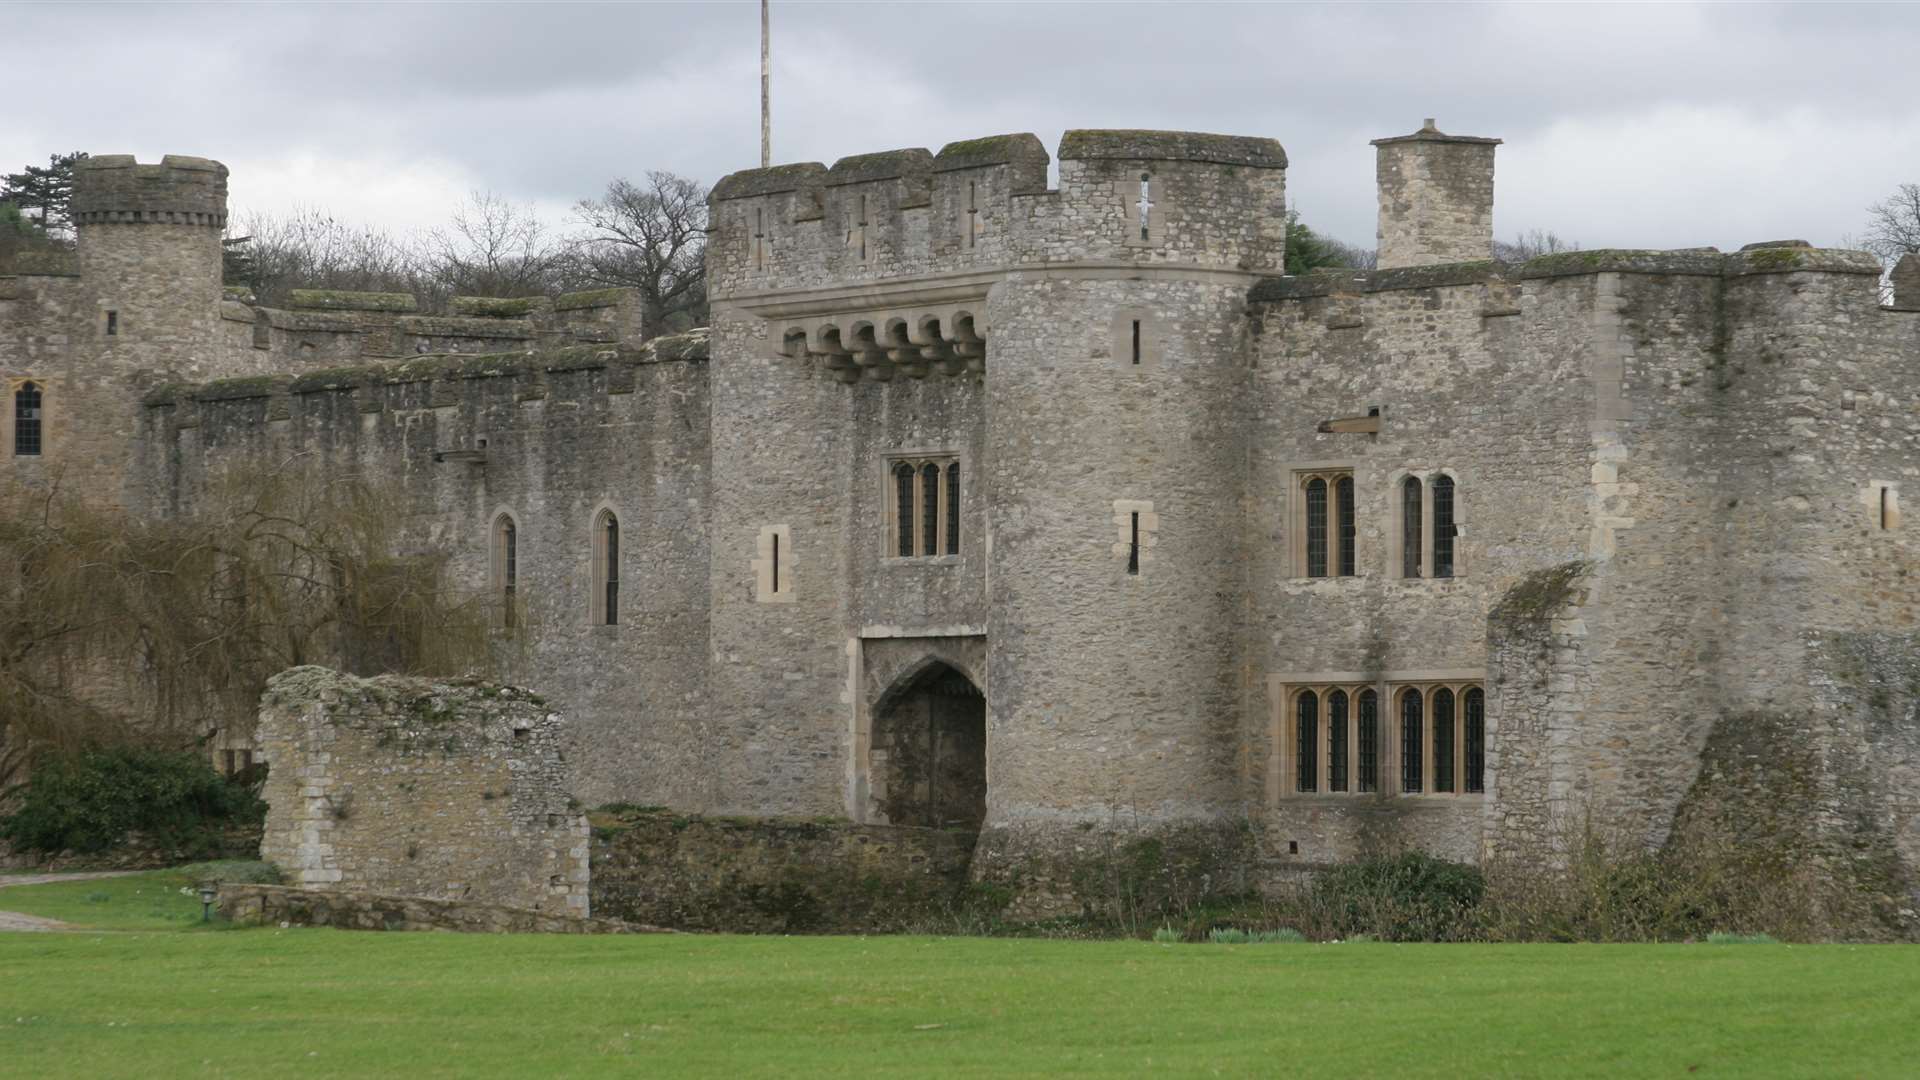 Allington Castle